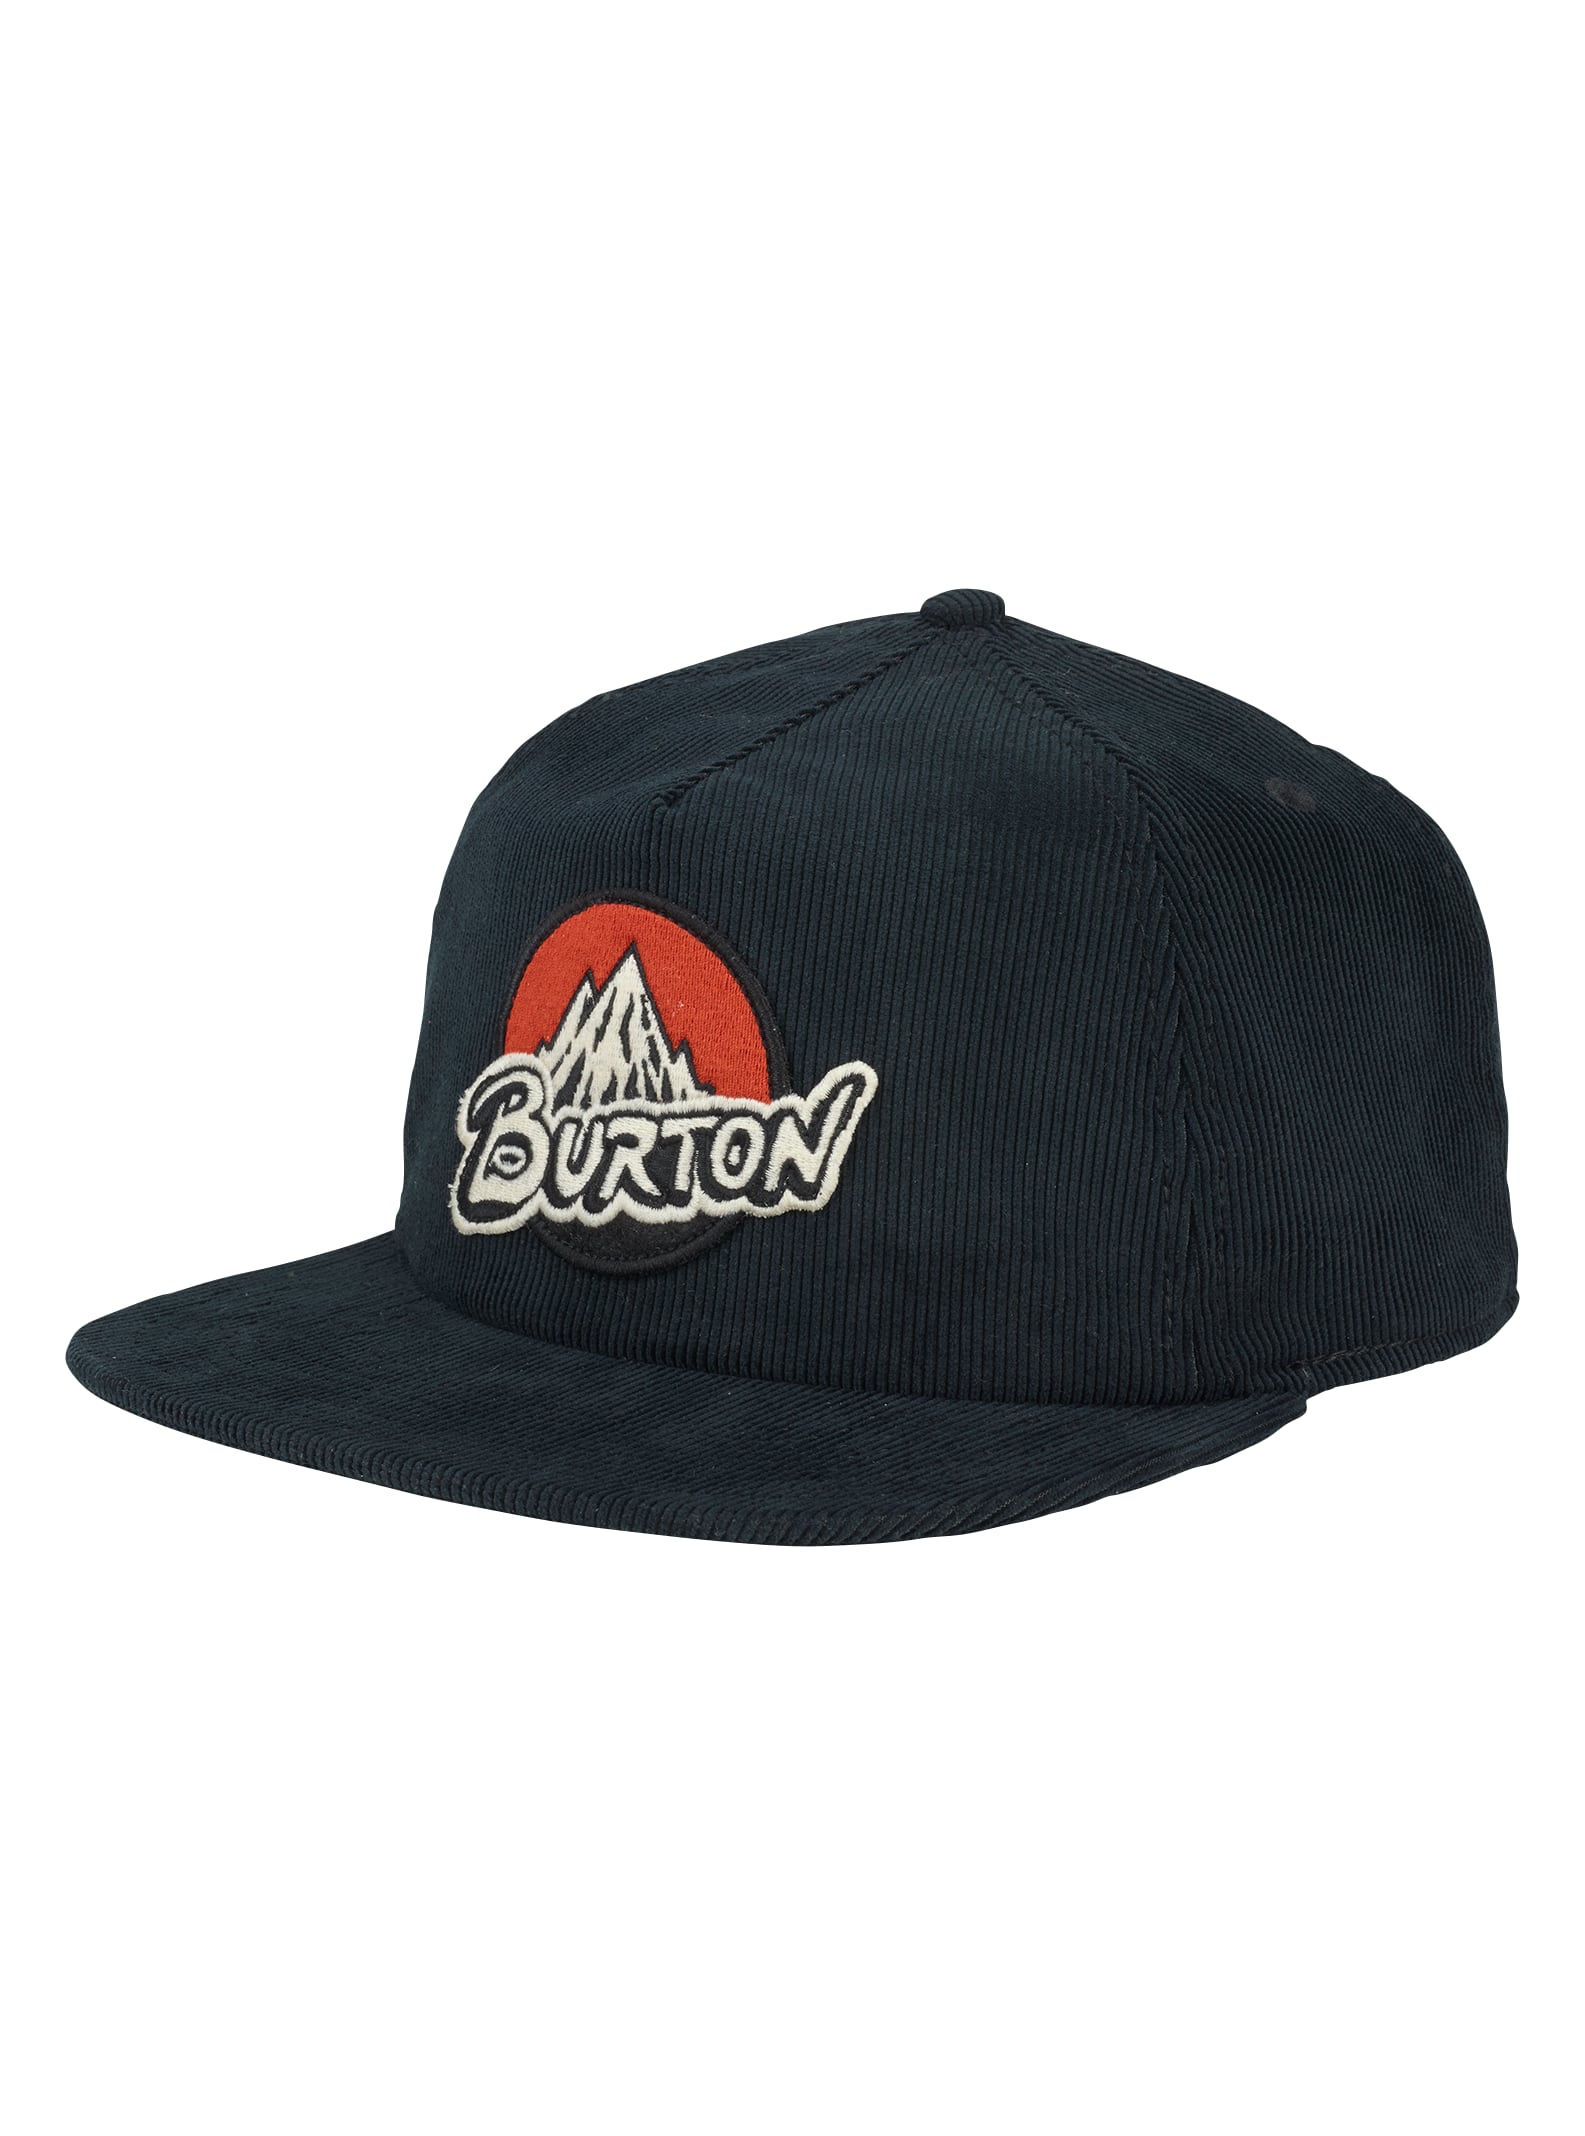 Burton Retro MTN Hat | Burton.com Fall 2019 US